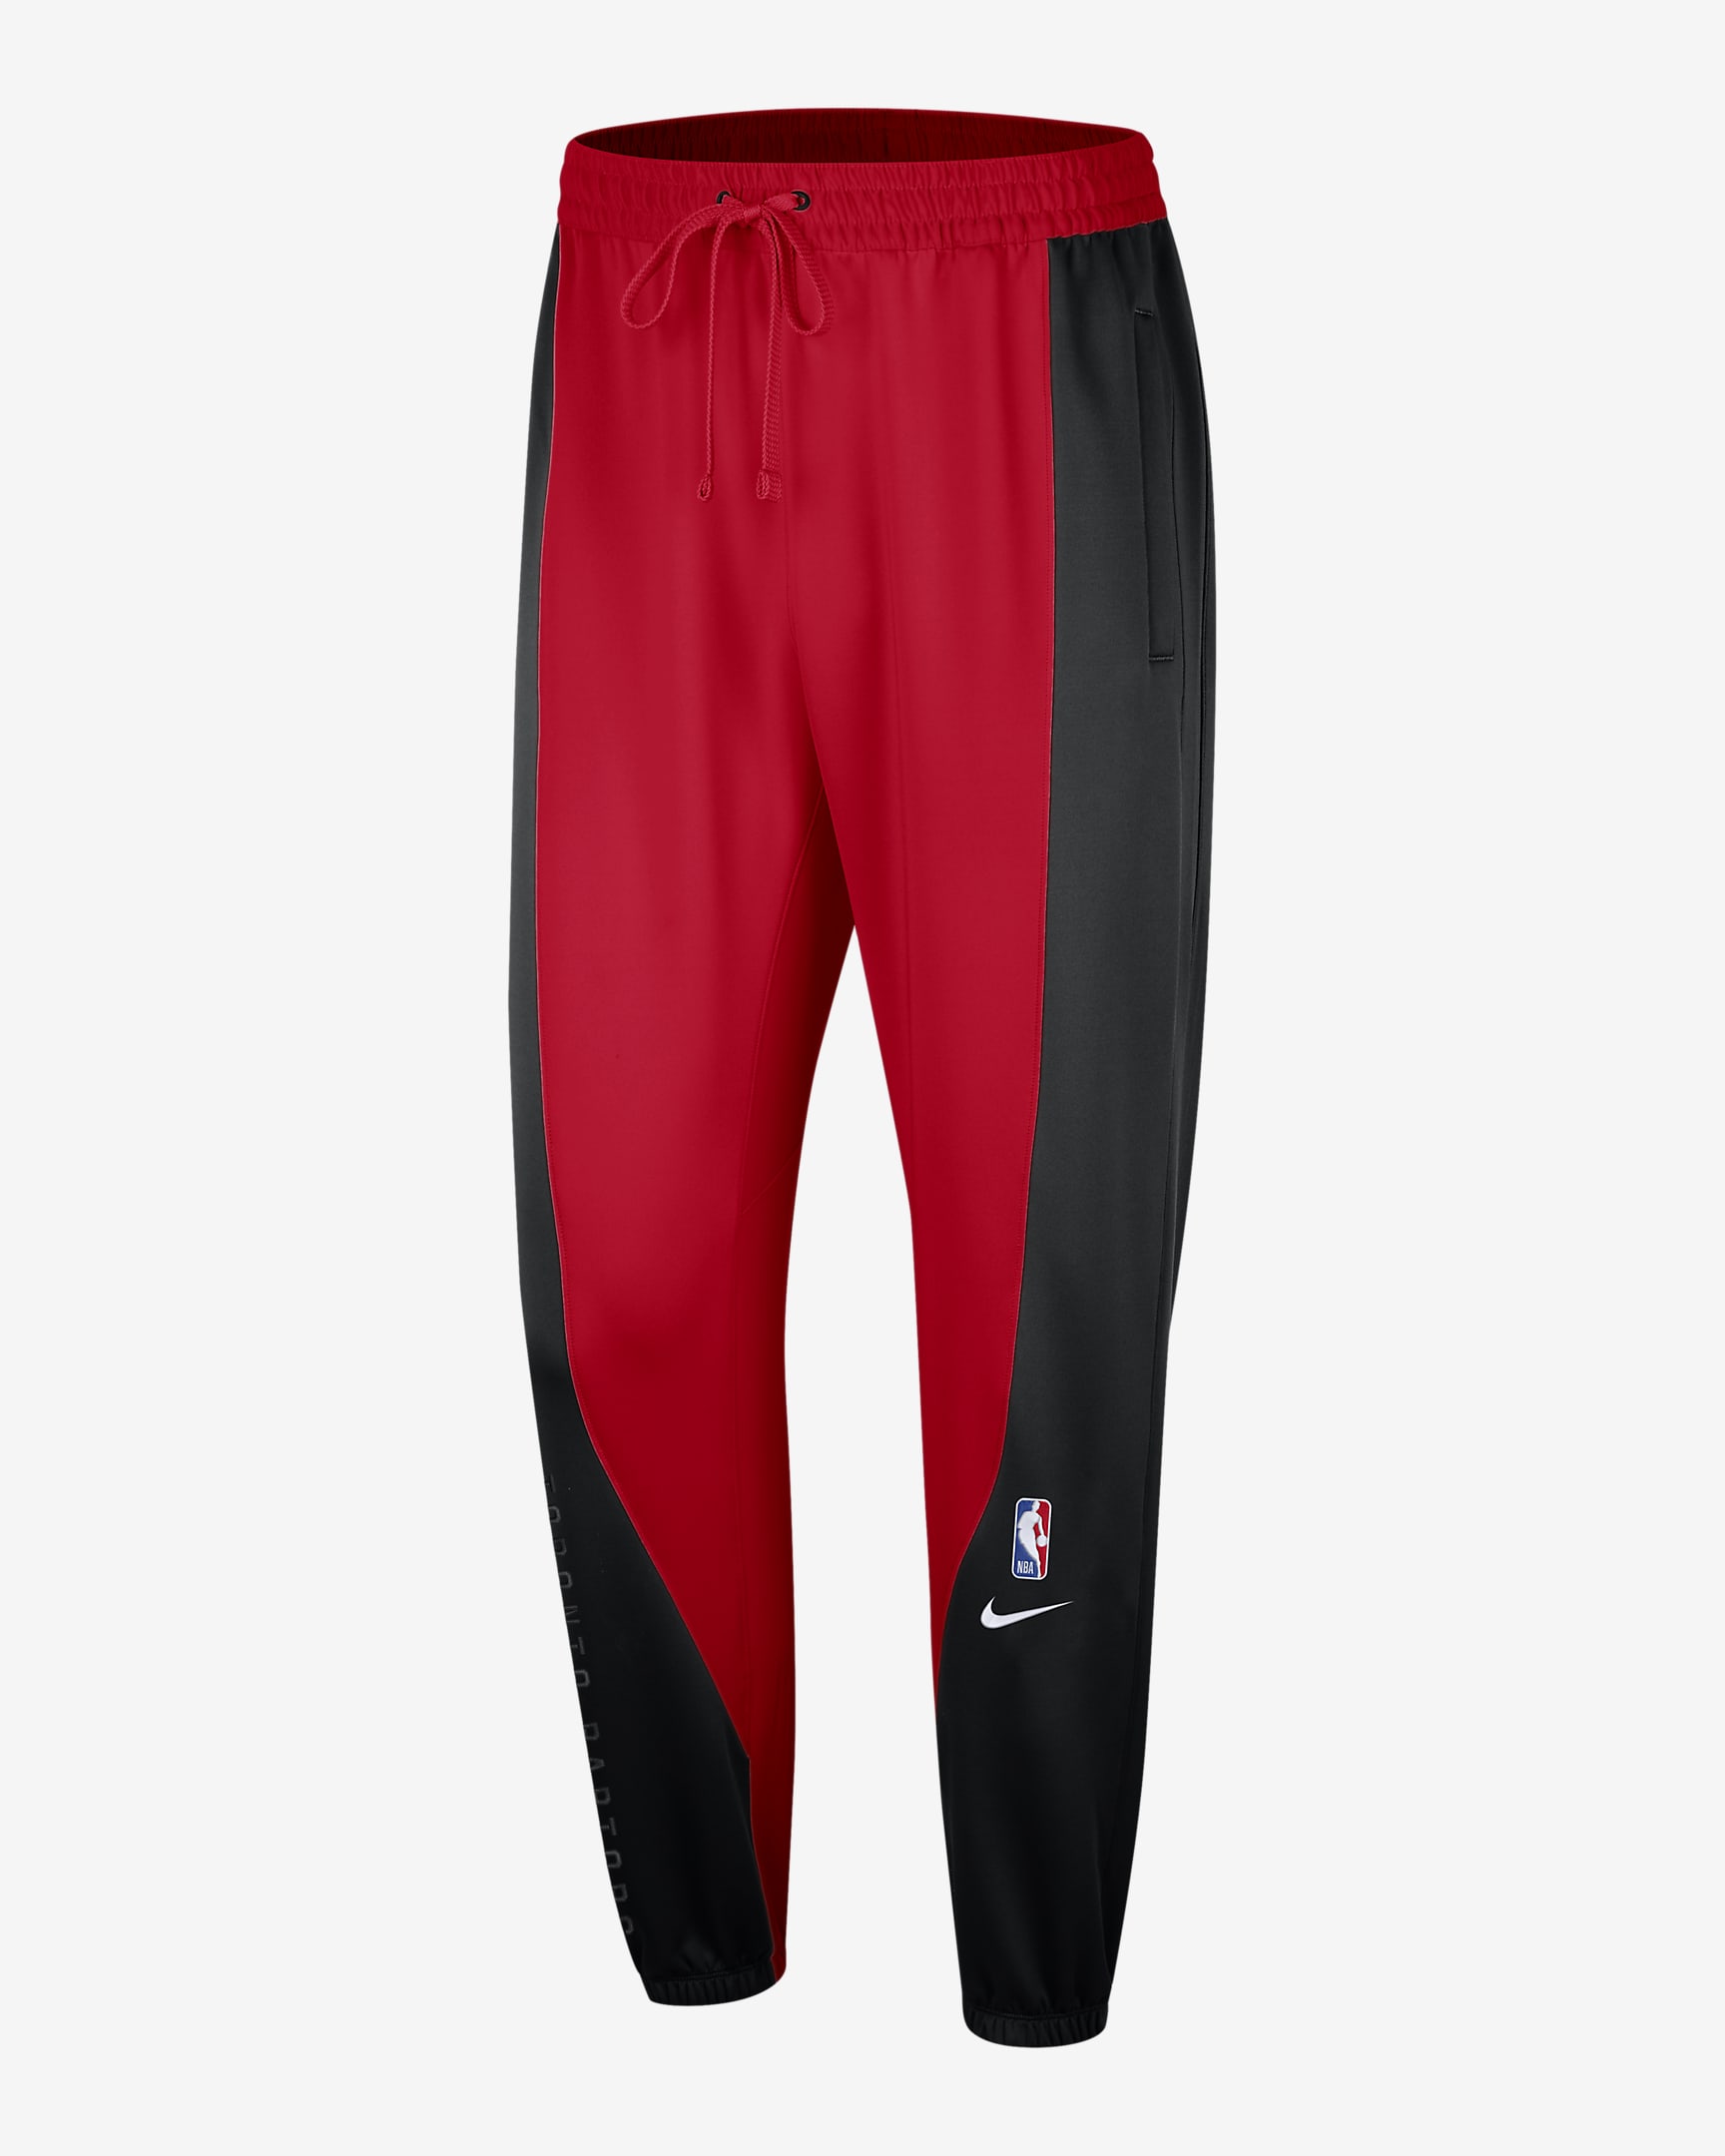 Toronto Raptors Showtime Men's Nike Dri-FIT NBA Trousers. Nike NL